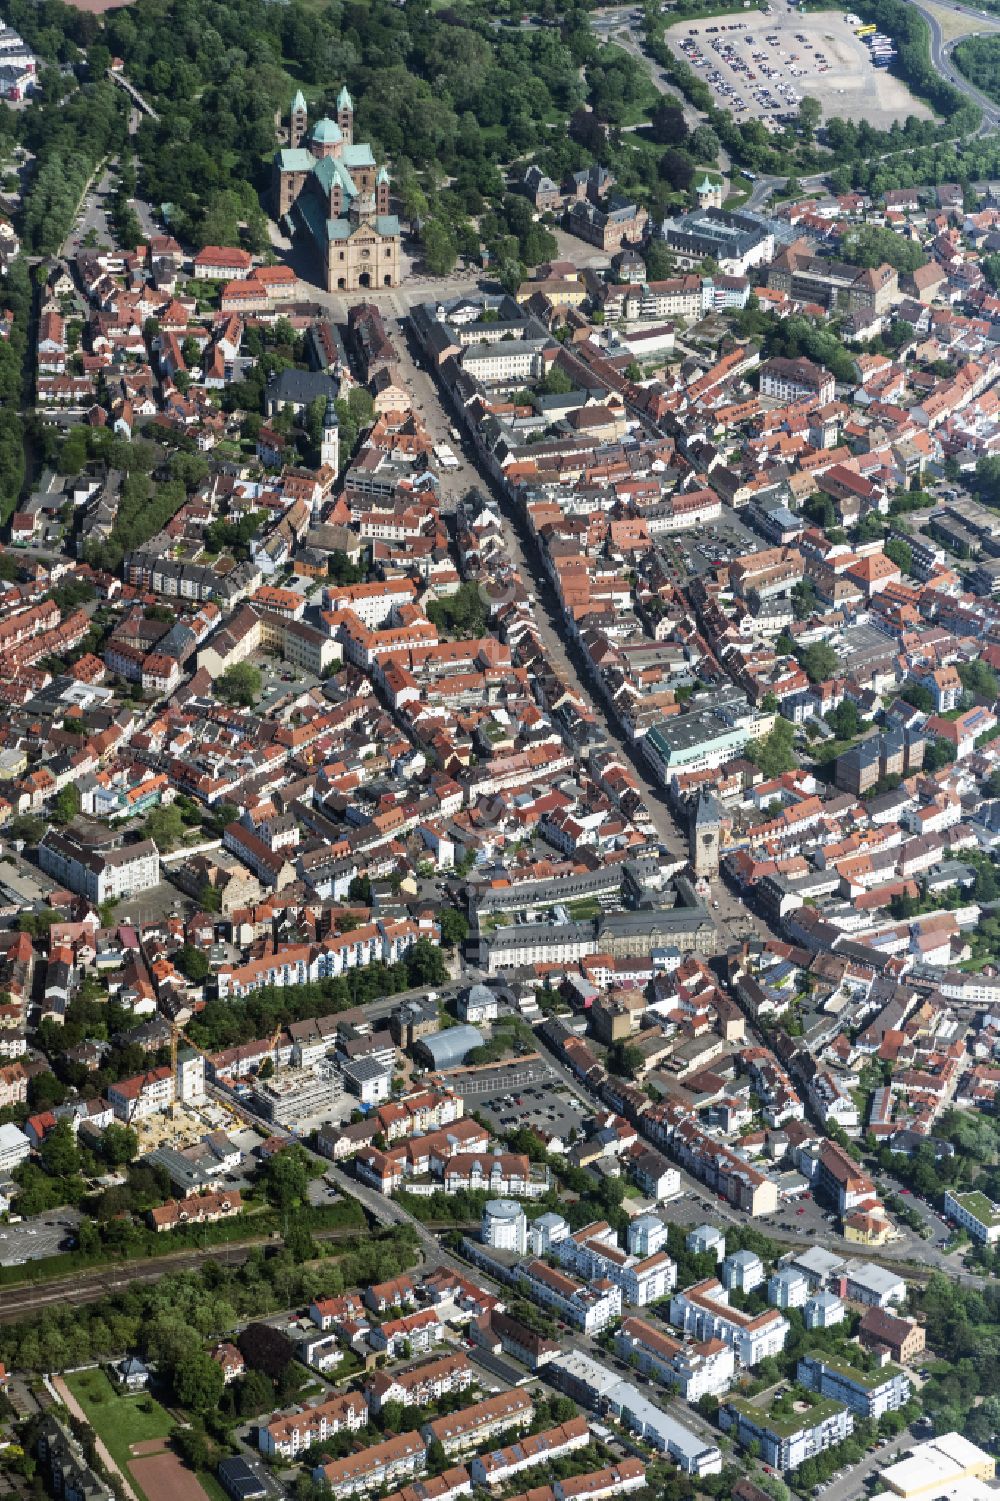 Dudenhofen von oben - Stadtzentrum im Innenstadtbereich in Dudenhofen im Bundesland Rheinland-Pfalz, Deutschland